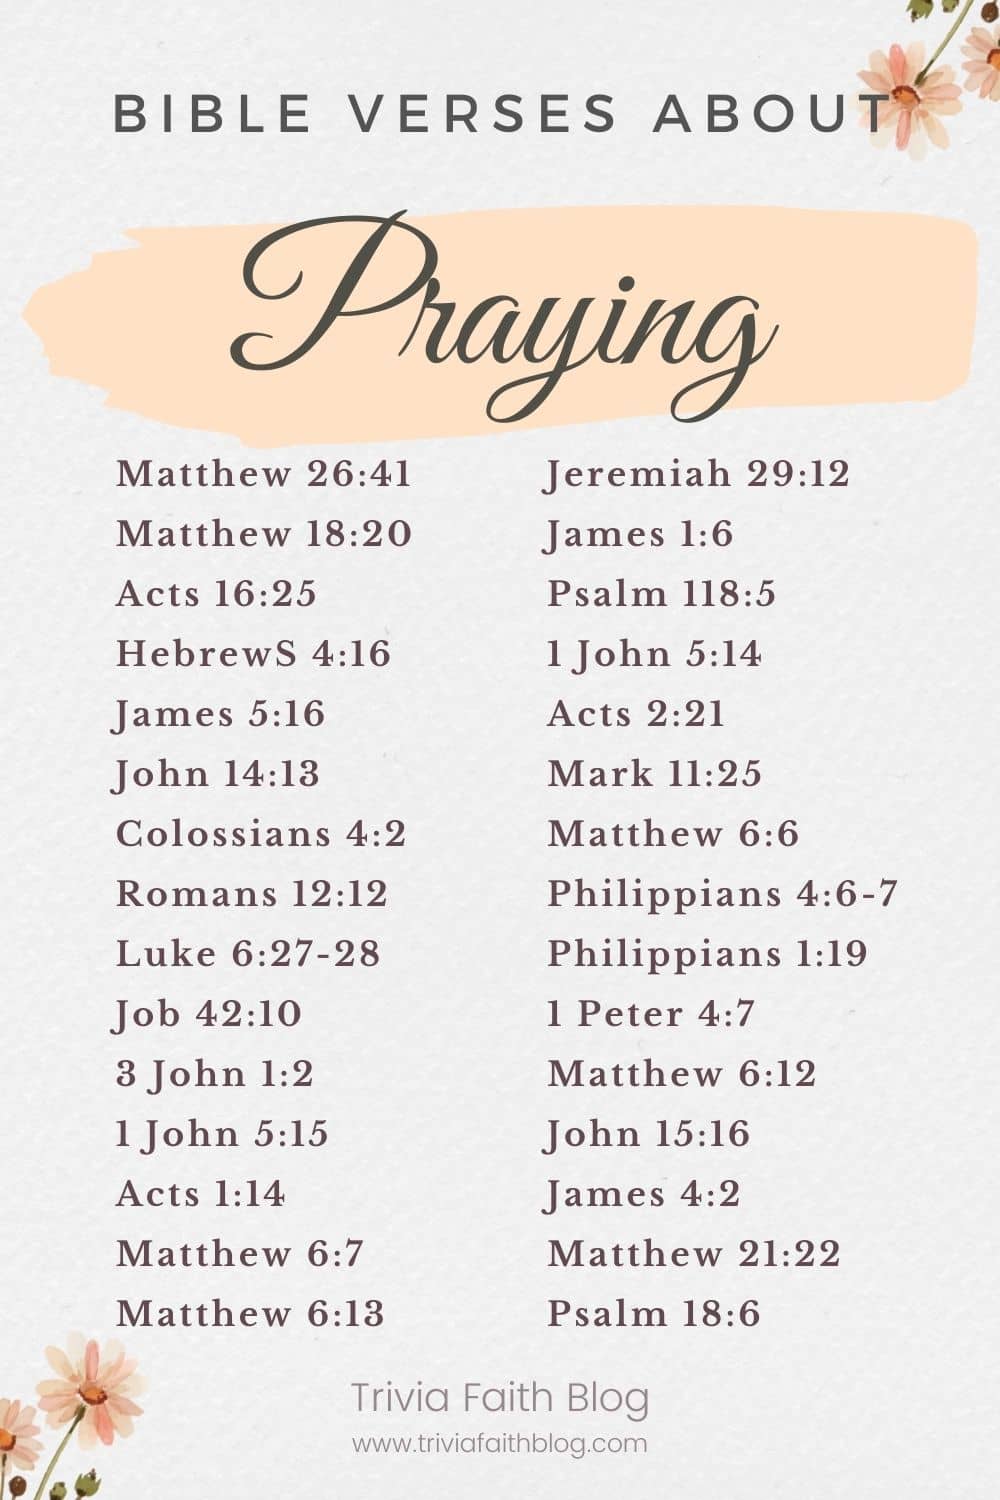 Bible verses about praying